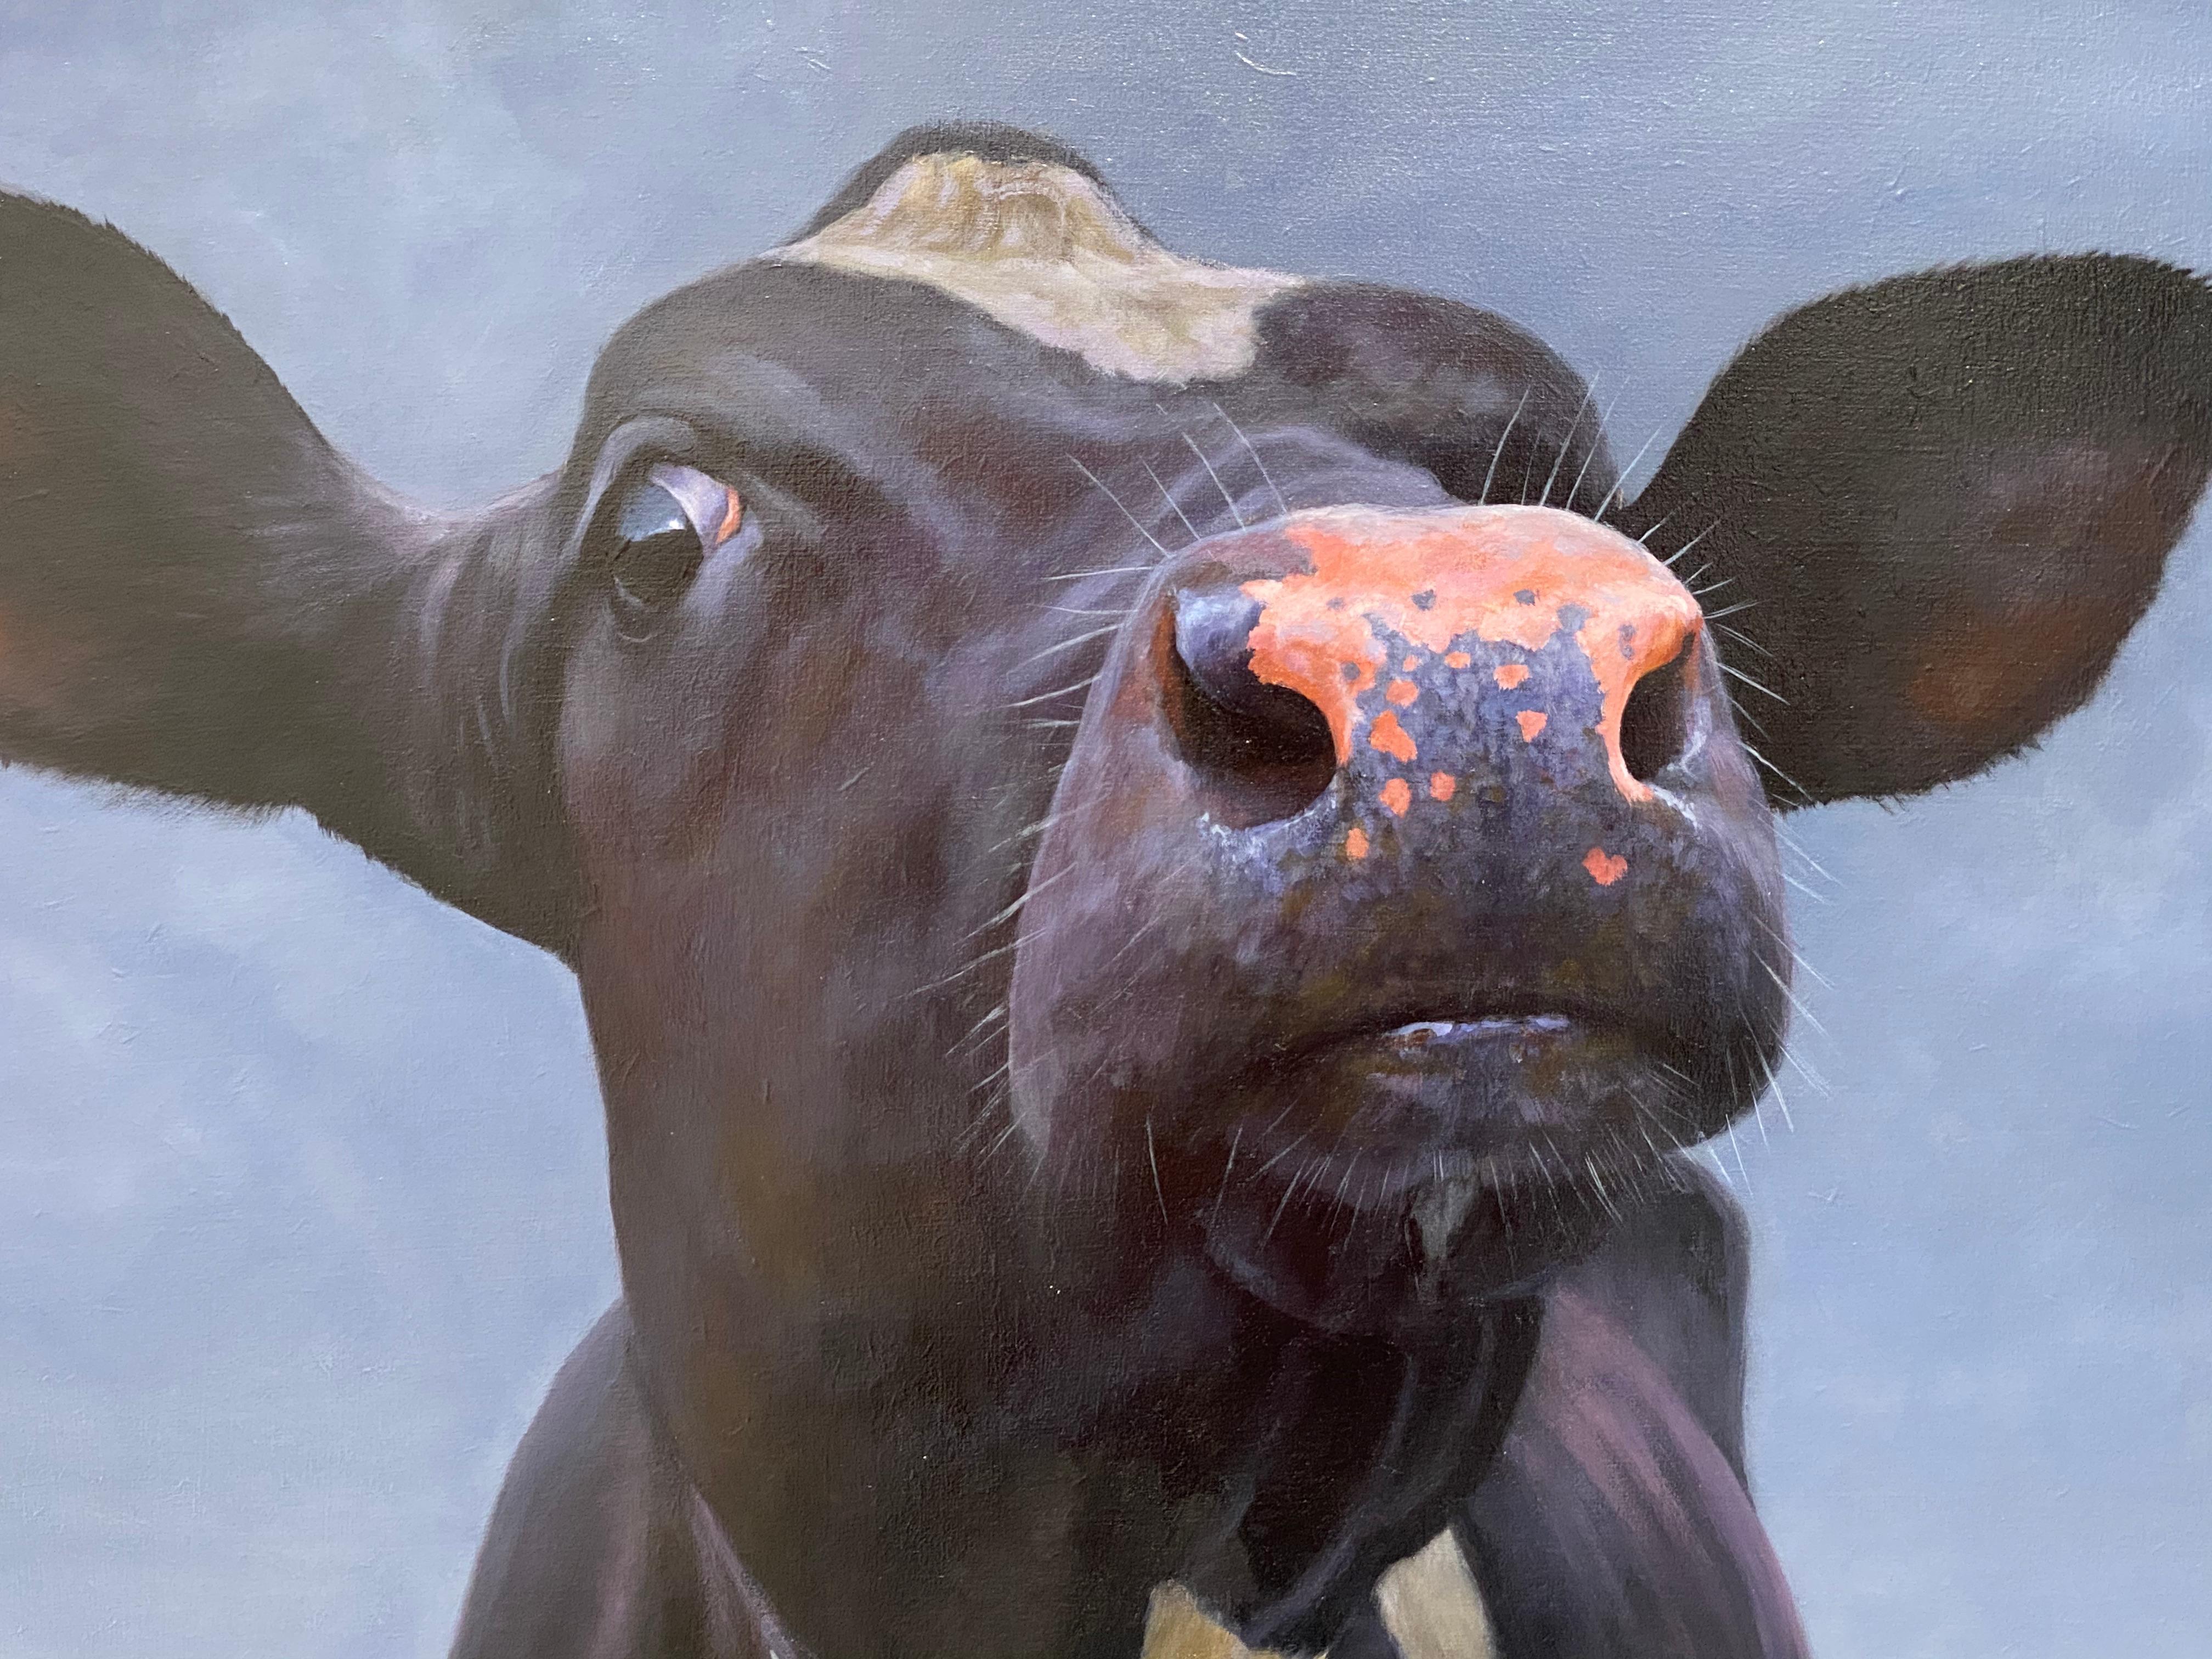 Une peinture de Paul Jansen

L'artiste néerlandais Paul Jansen préfère peindre des portraits de vaches. Jansen cherche des vaches, examine tous les types de vaches dans tous les endroits possibles. Pour lui, une vache est un animal intéressant qui